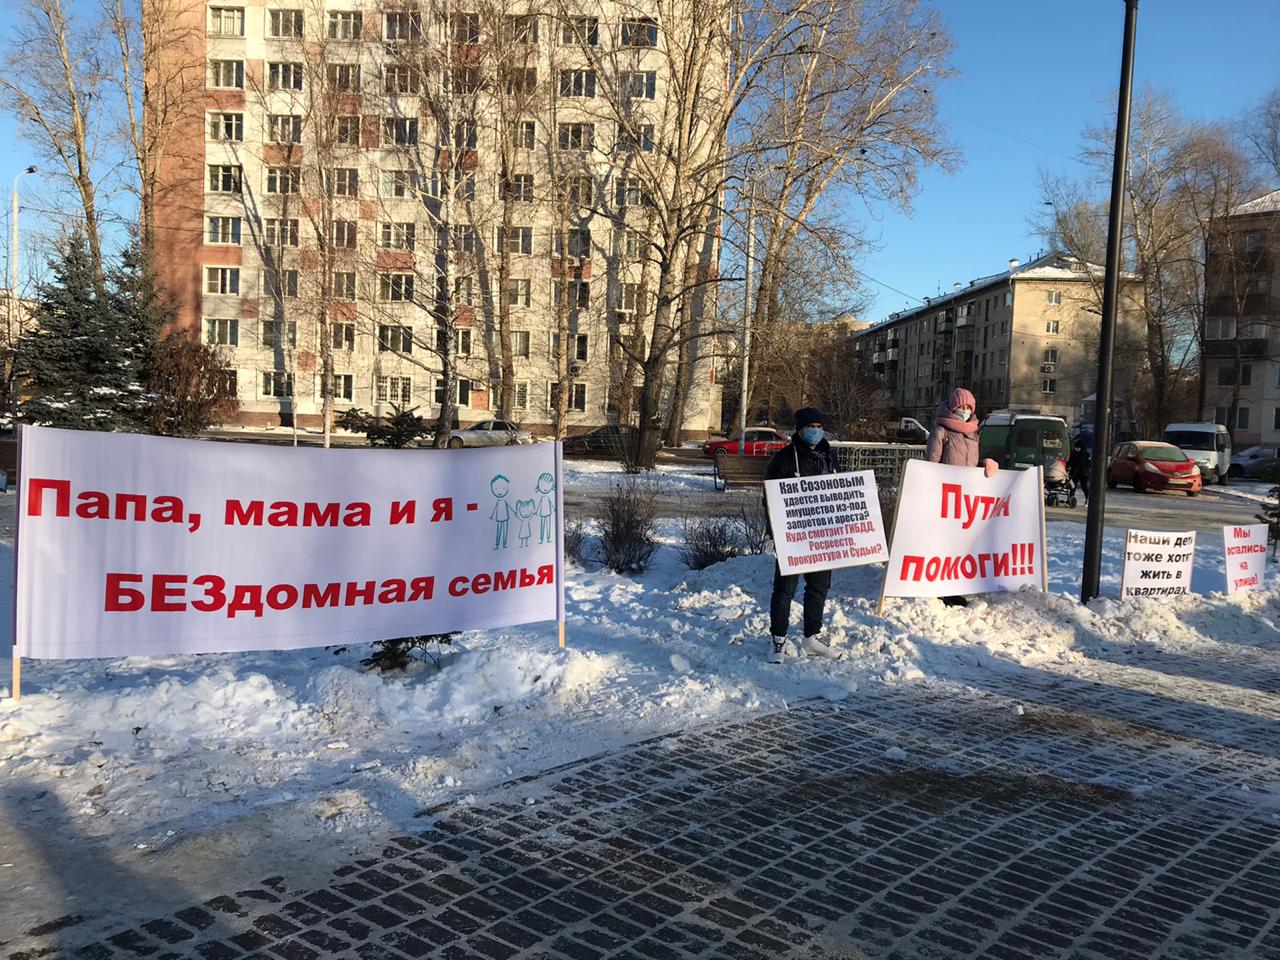 «Путин, помоги»: клиенты Созоновой просят о помощи президента России 